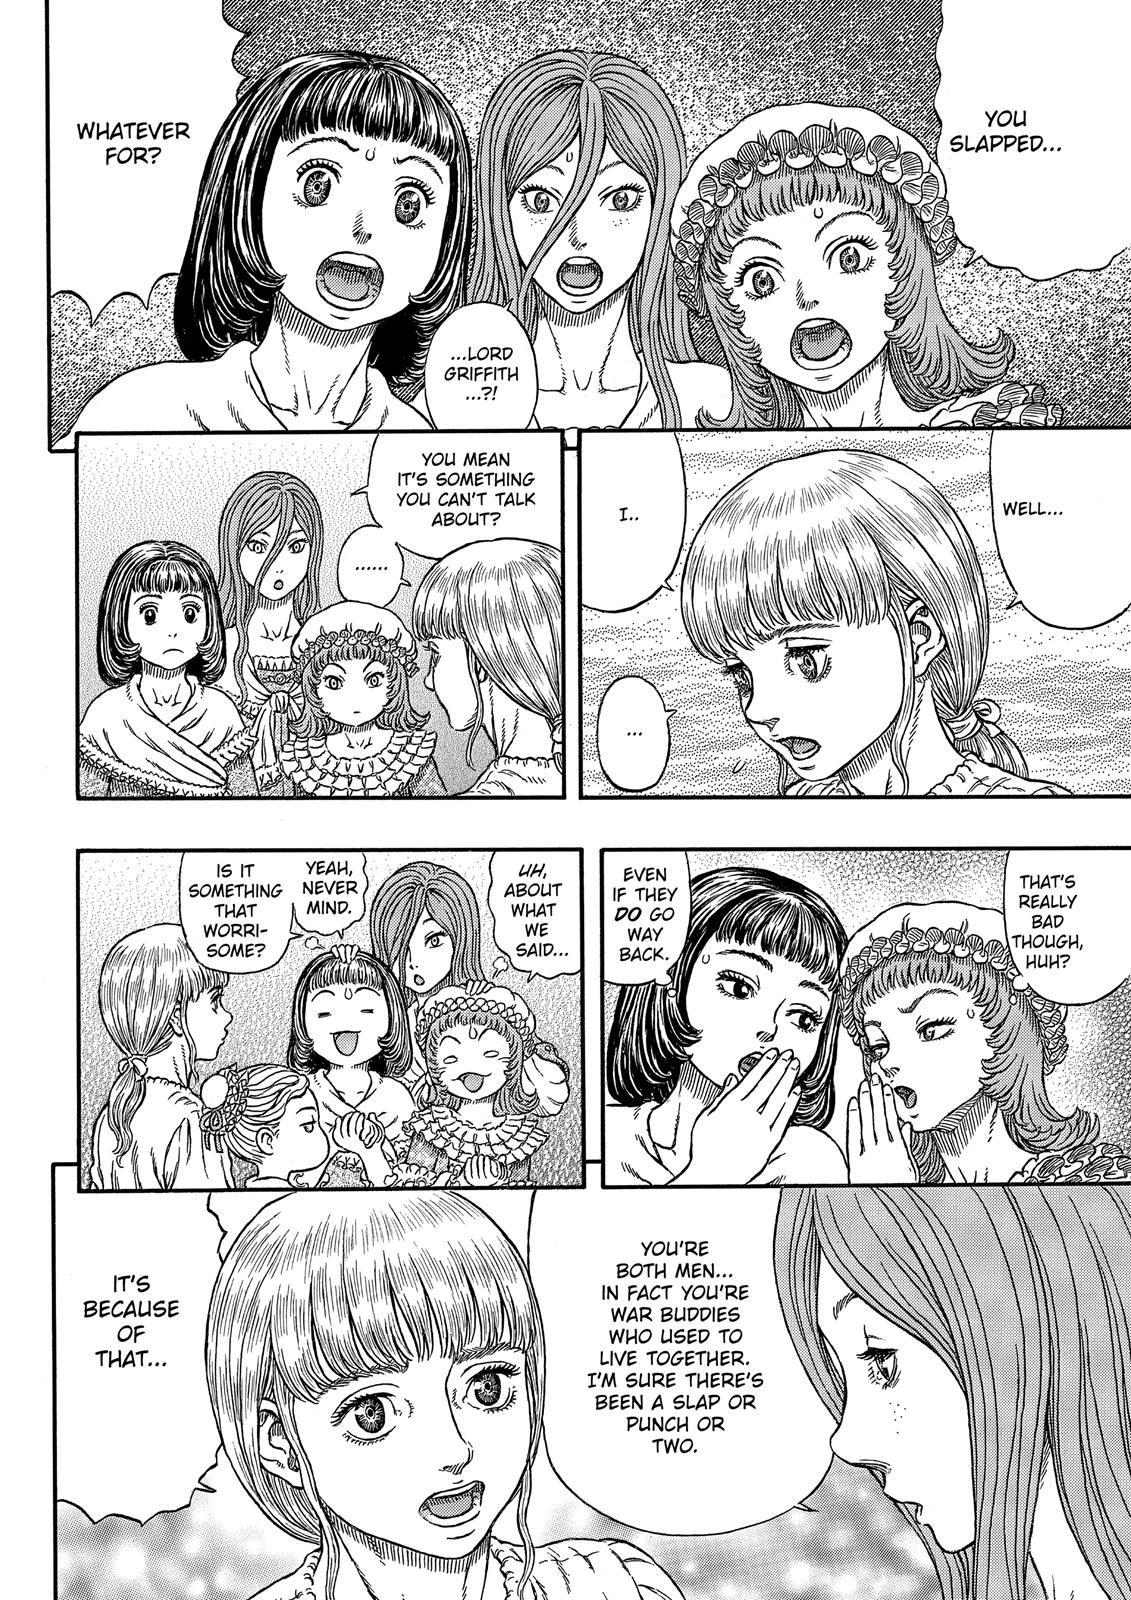 Berserk Manga Chapter 338 image 09